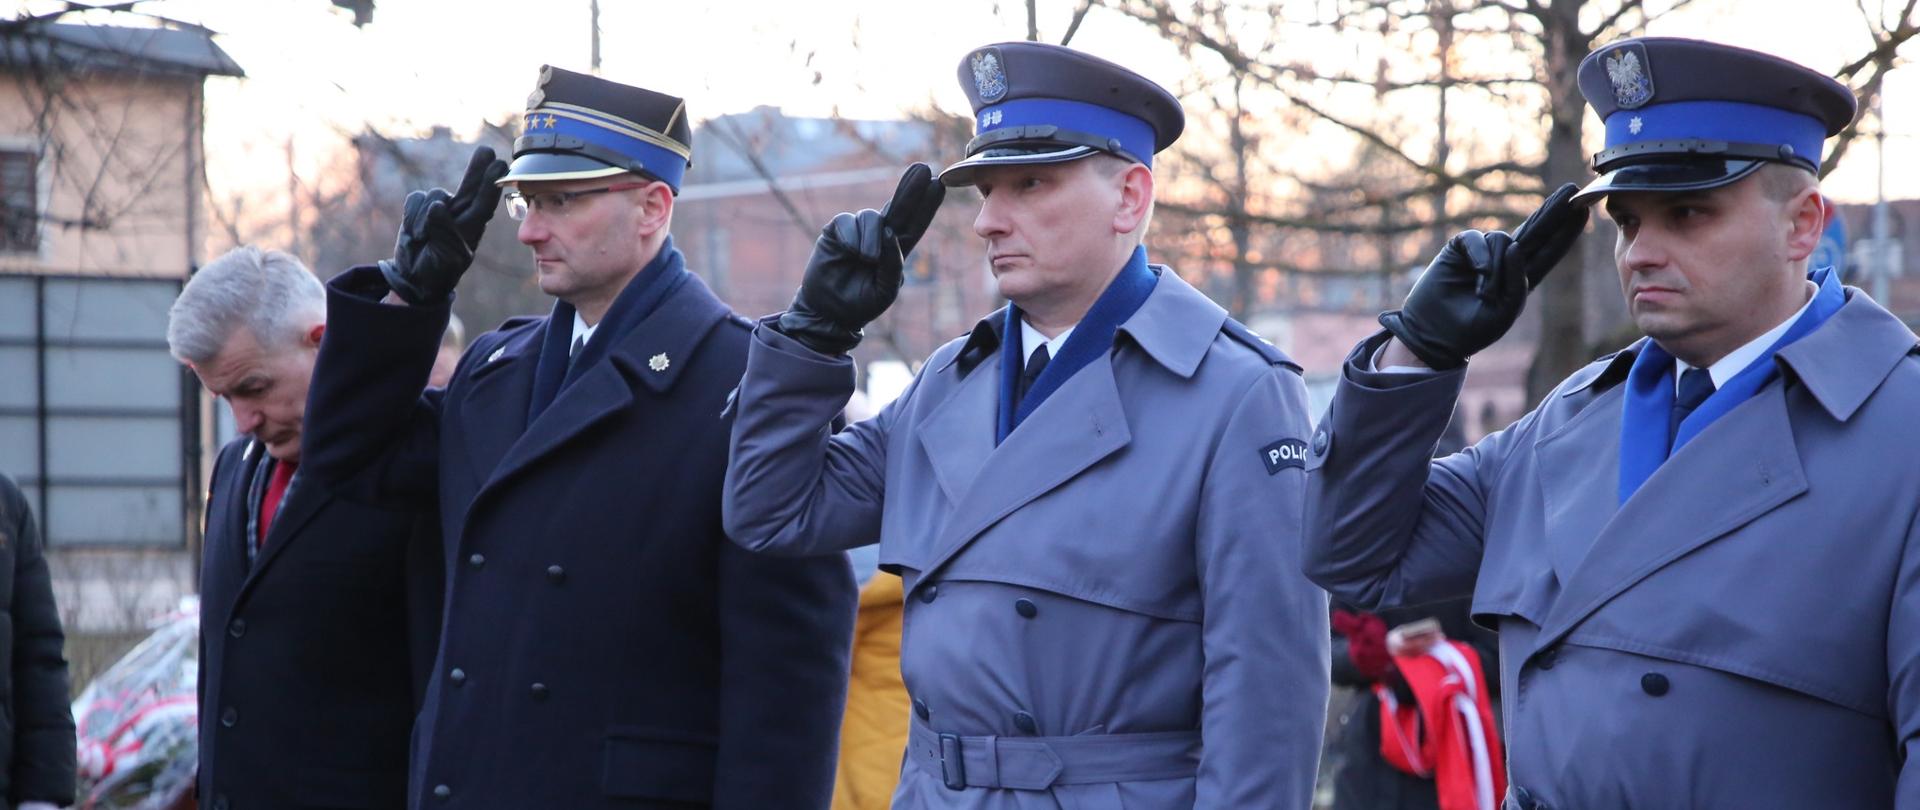 Na zdjęciu od lewej strony stoją salutując komendant powiatowy PSP w Żyrardowie st. bryg. Mariusz Tymoszewicz oraz przedstawiciele żyrardowskiej Policji